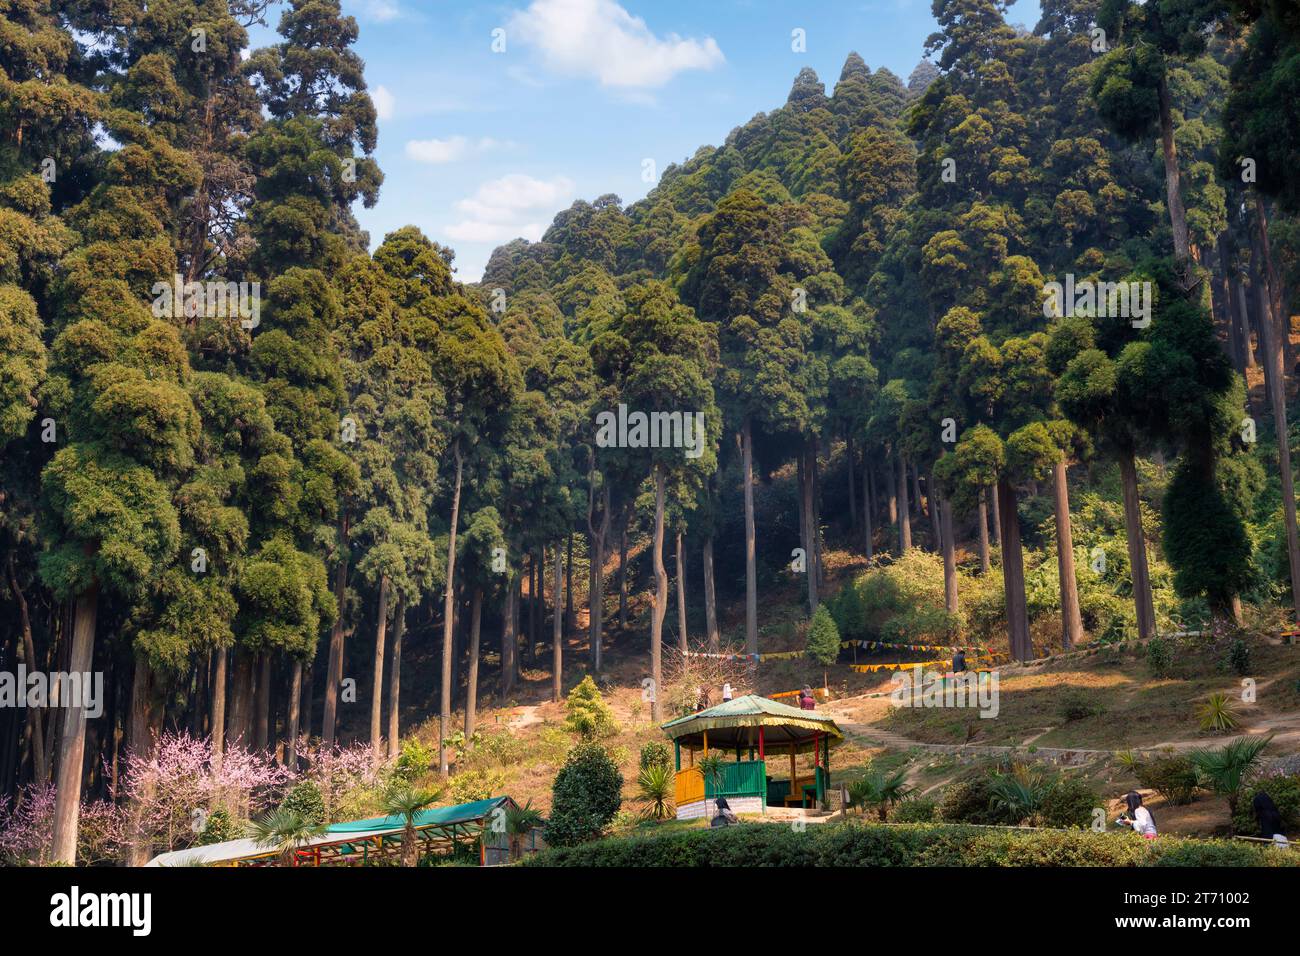 Der Lamhatta Eco Tourism Park liegt an einem Berghang umgeben von Kiefern und ist ein beliebtes Touristenziel in Darjeeling, Westbengalen, Indien Stockfoto